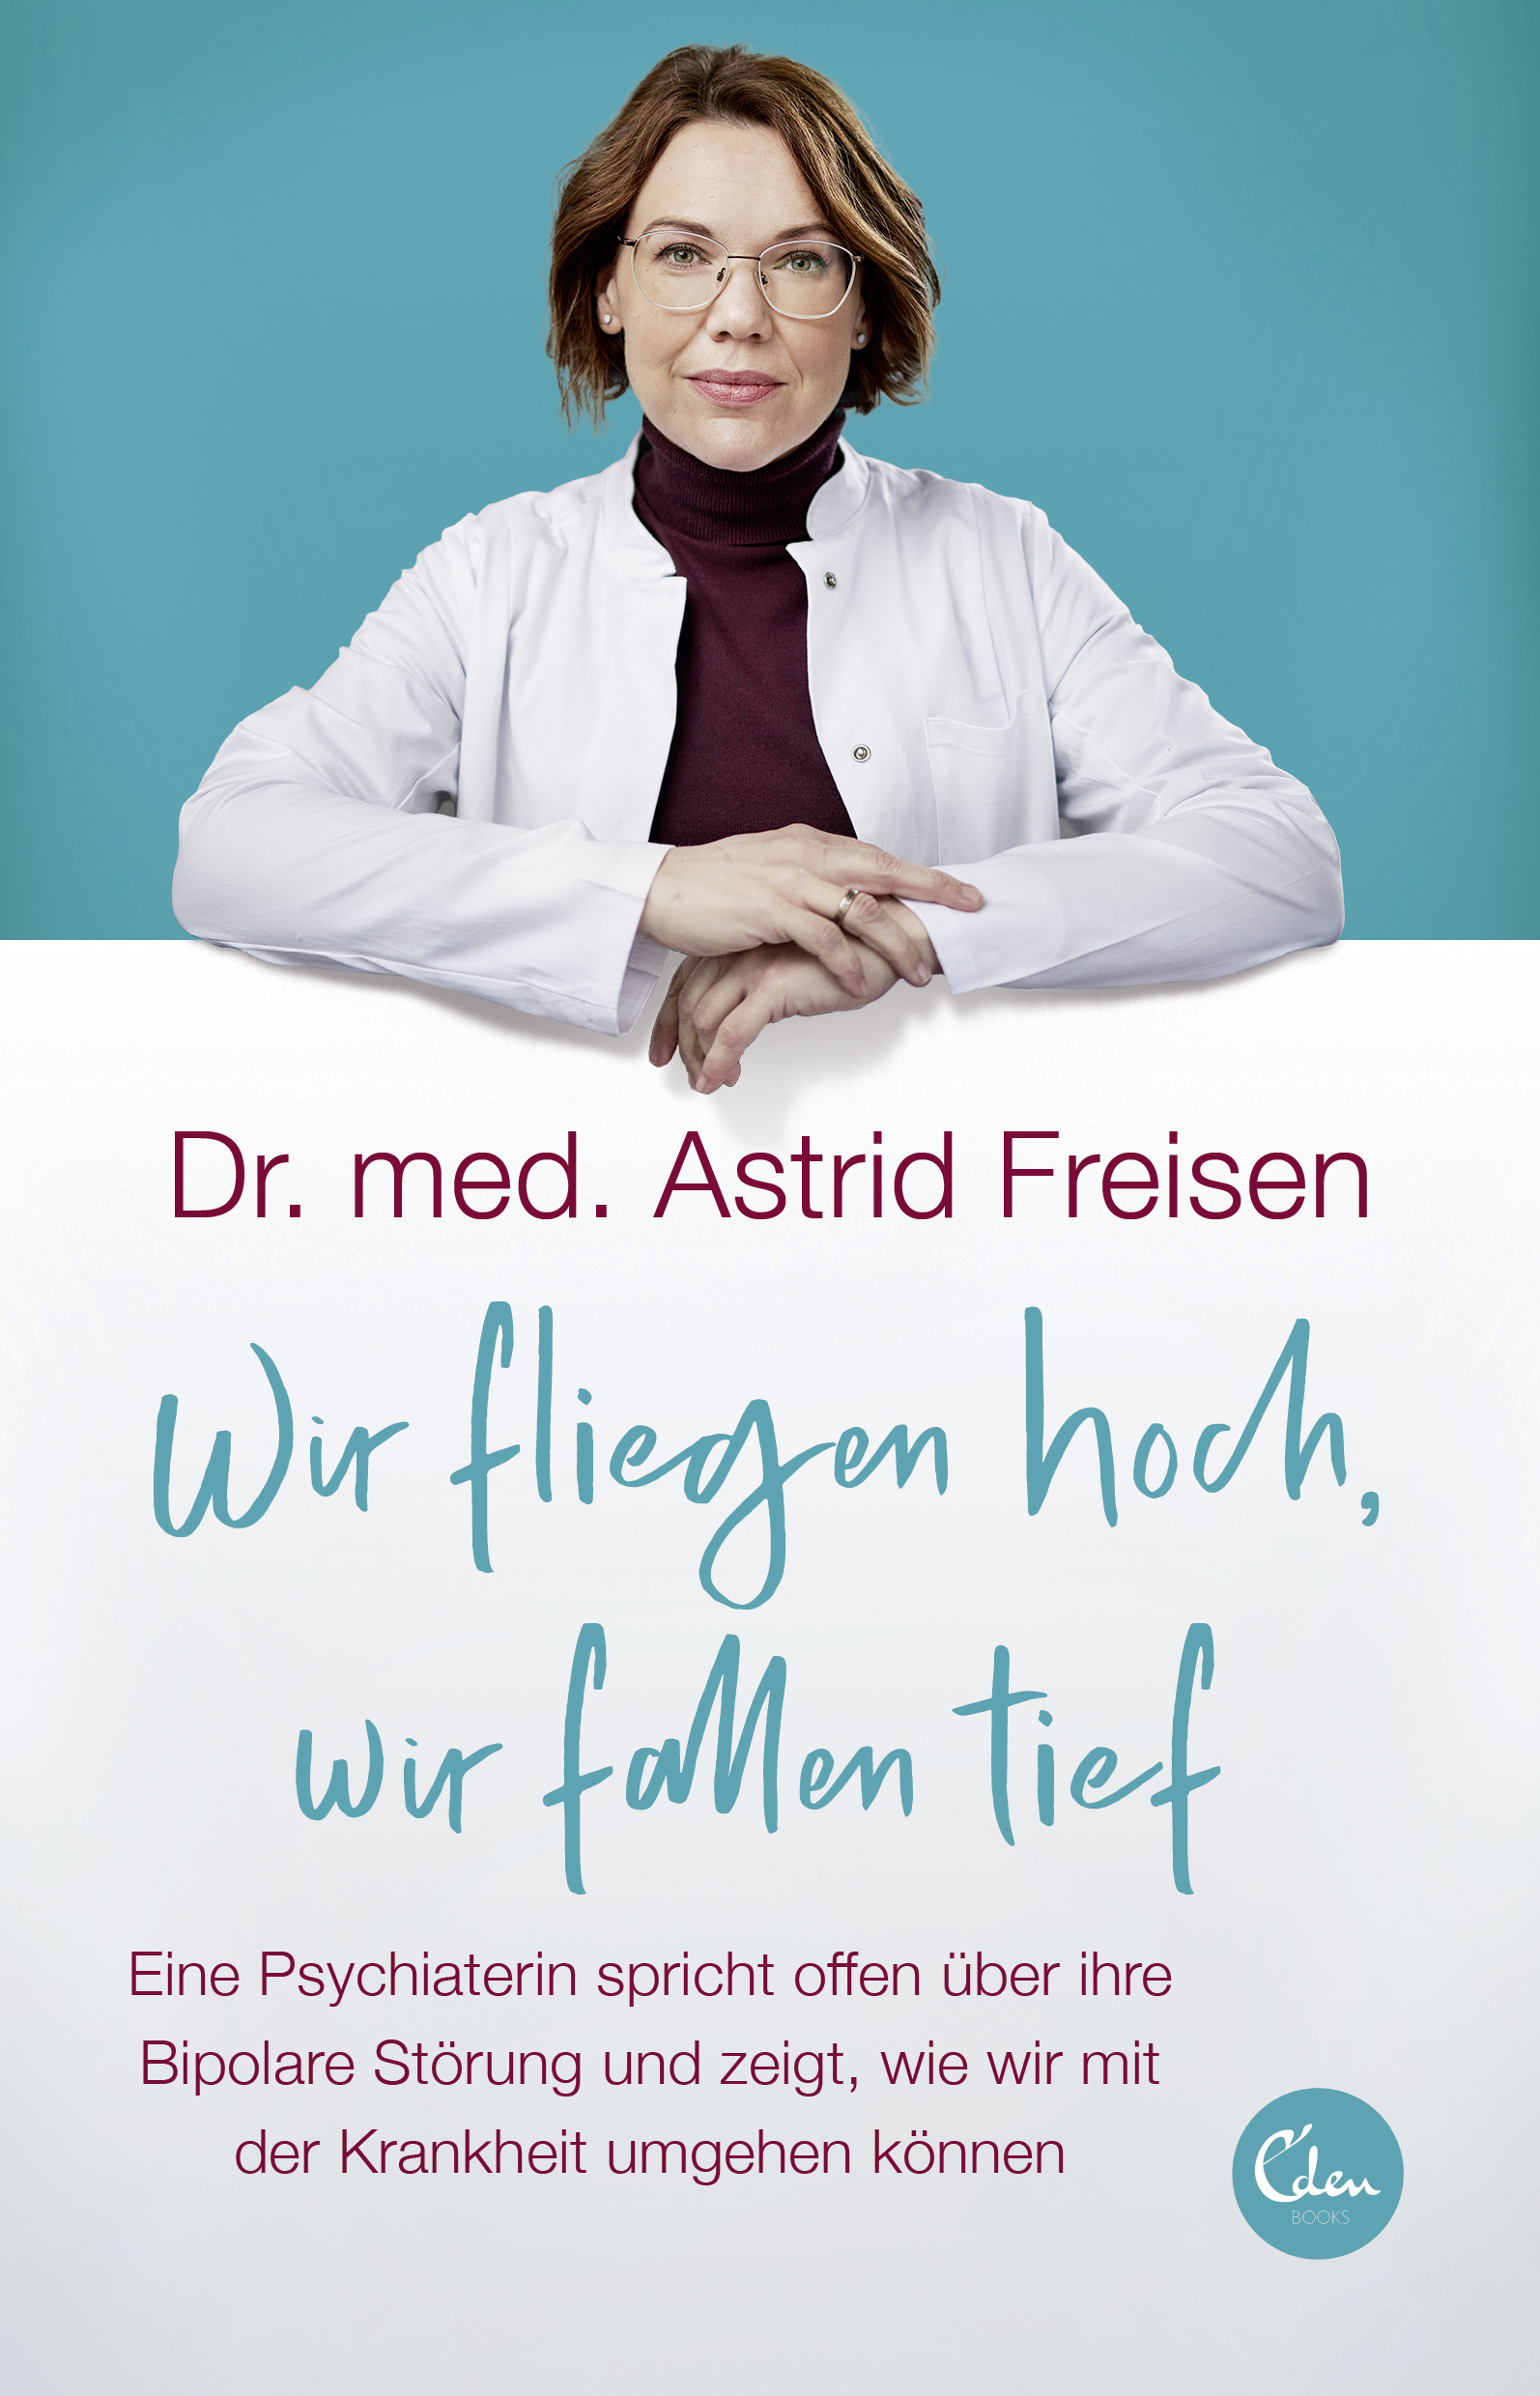 Buchcover: Dr. med. Astrid Freisen: Wir fliegen hoch, wir fallen tief